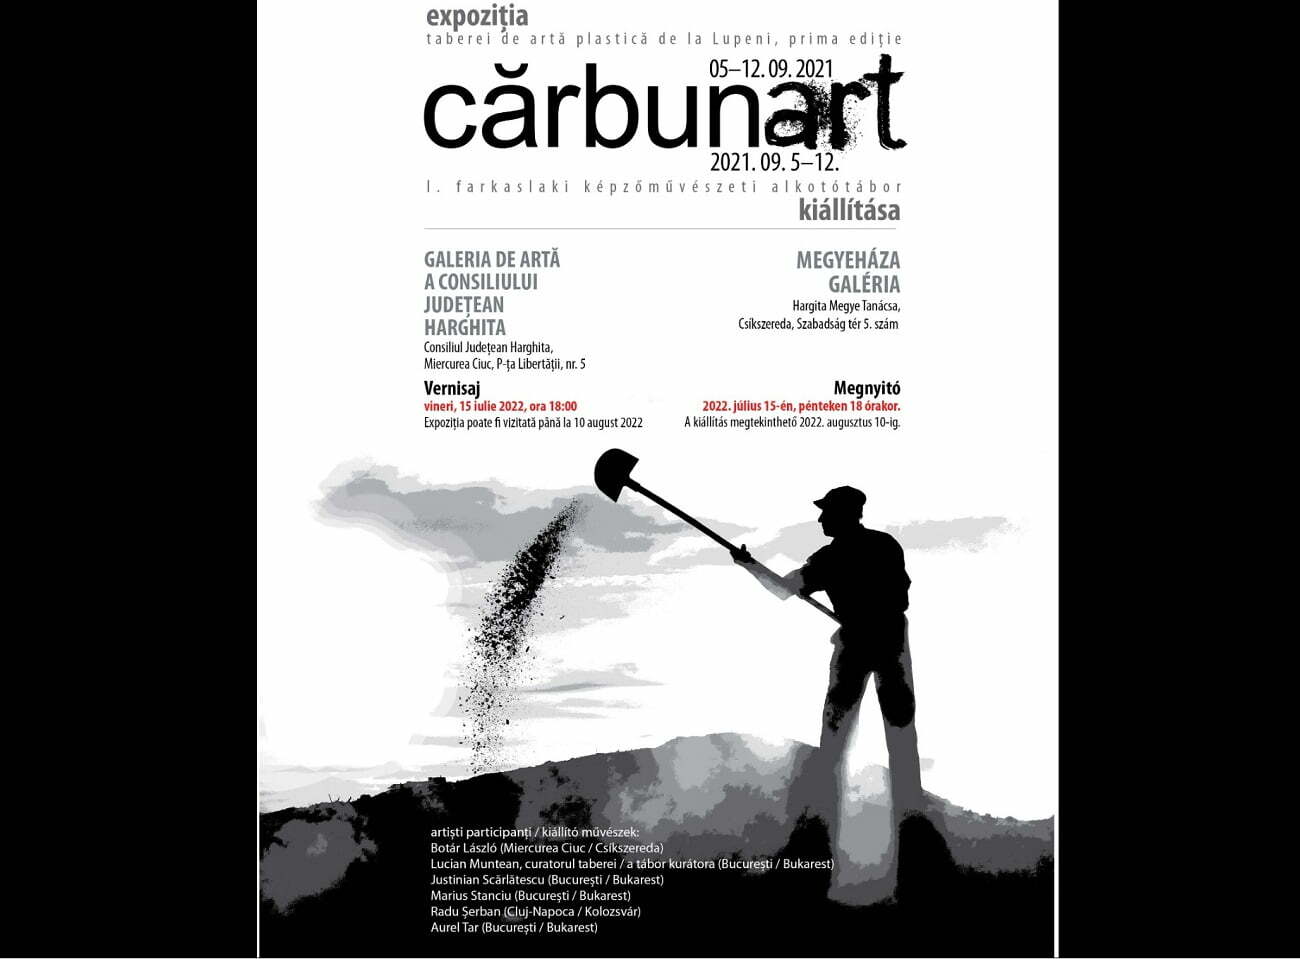 Cărbunart – expoziția primei ediții a taberei de artă contemporană de la Lupeni